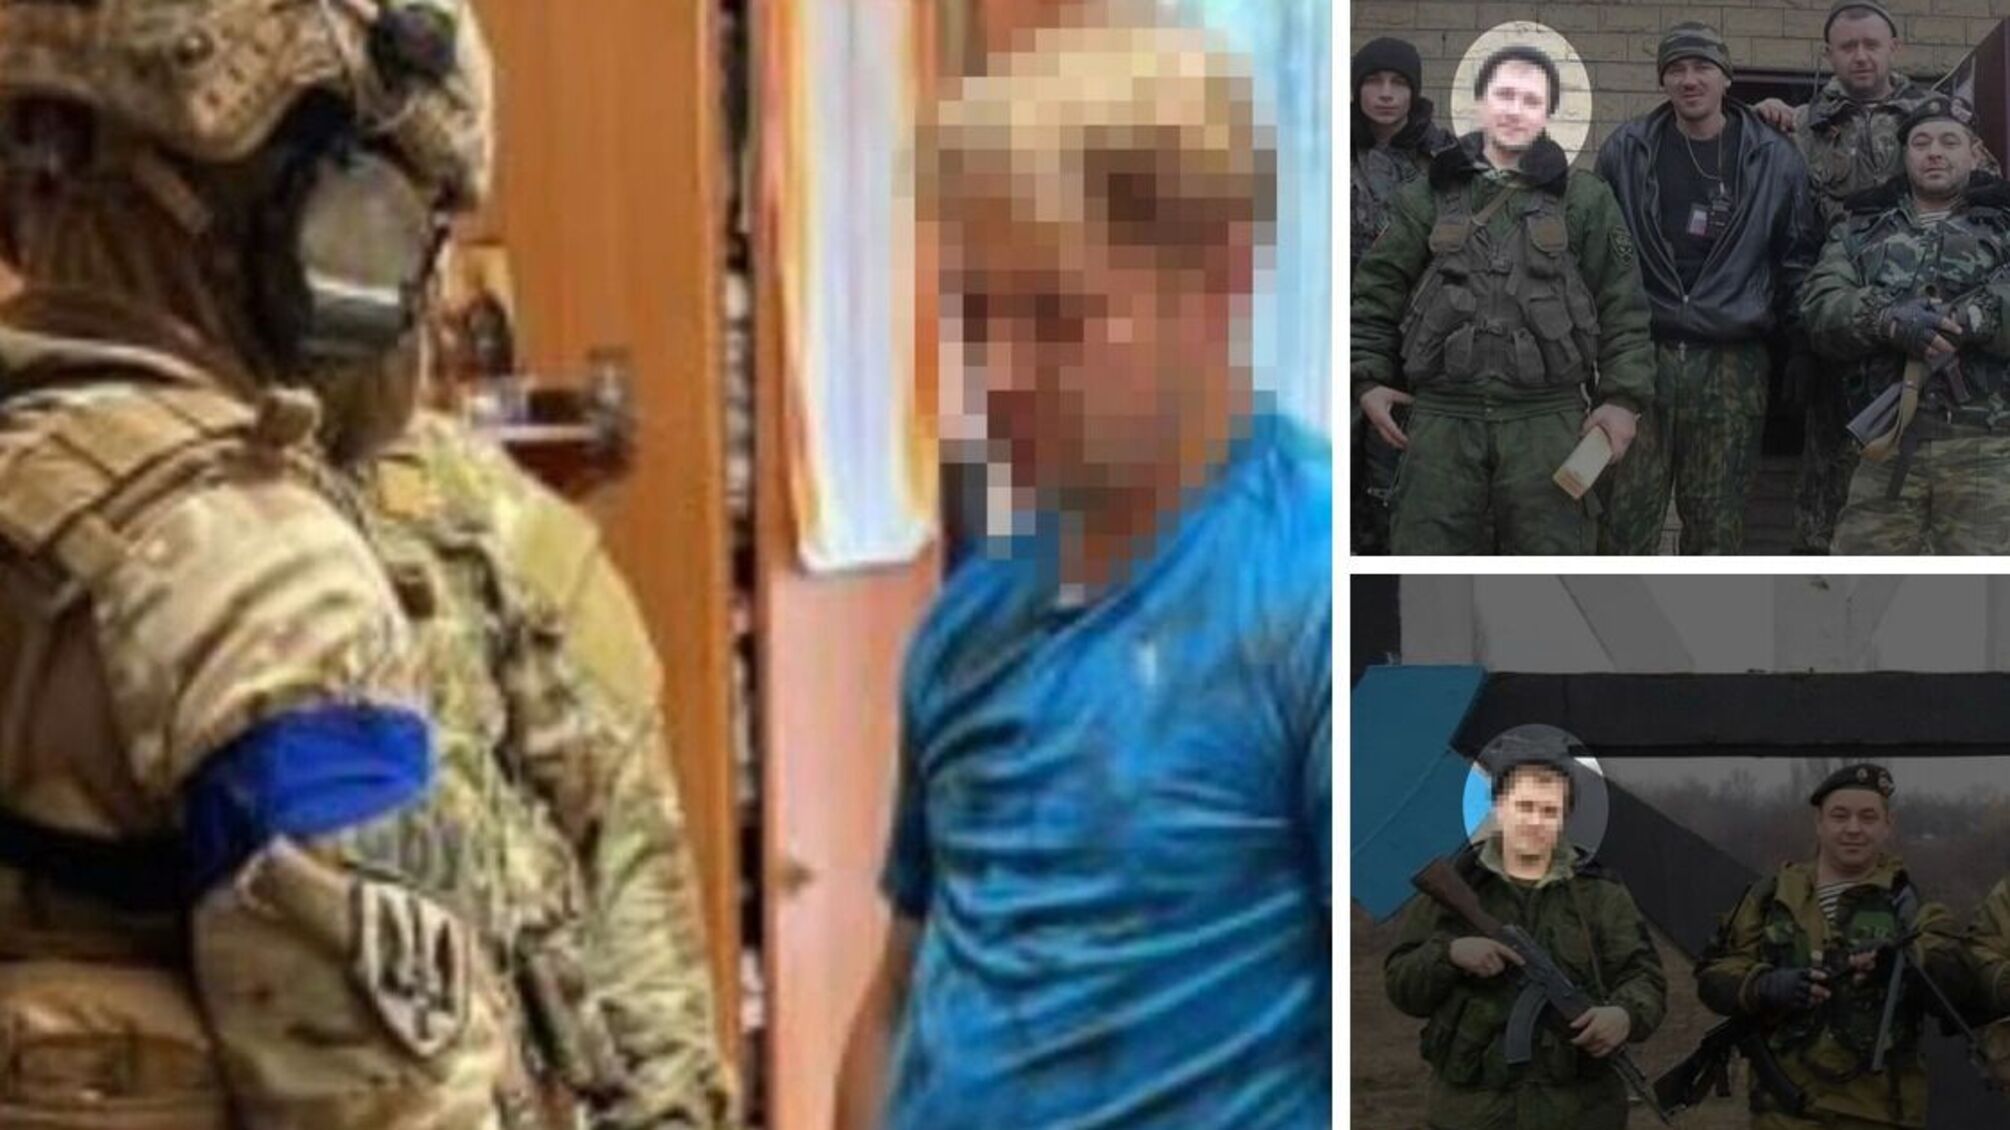 Хотел 'залечь на дно' в Одессе: правоохранители задержали боевика пророссийской группировки 'Привидение'